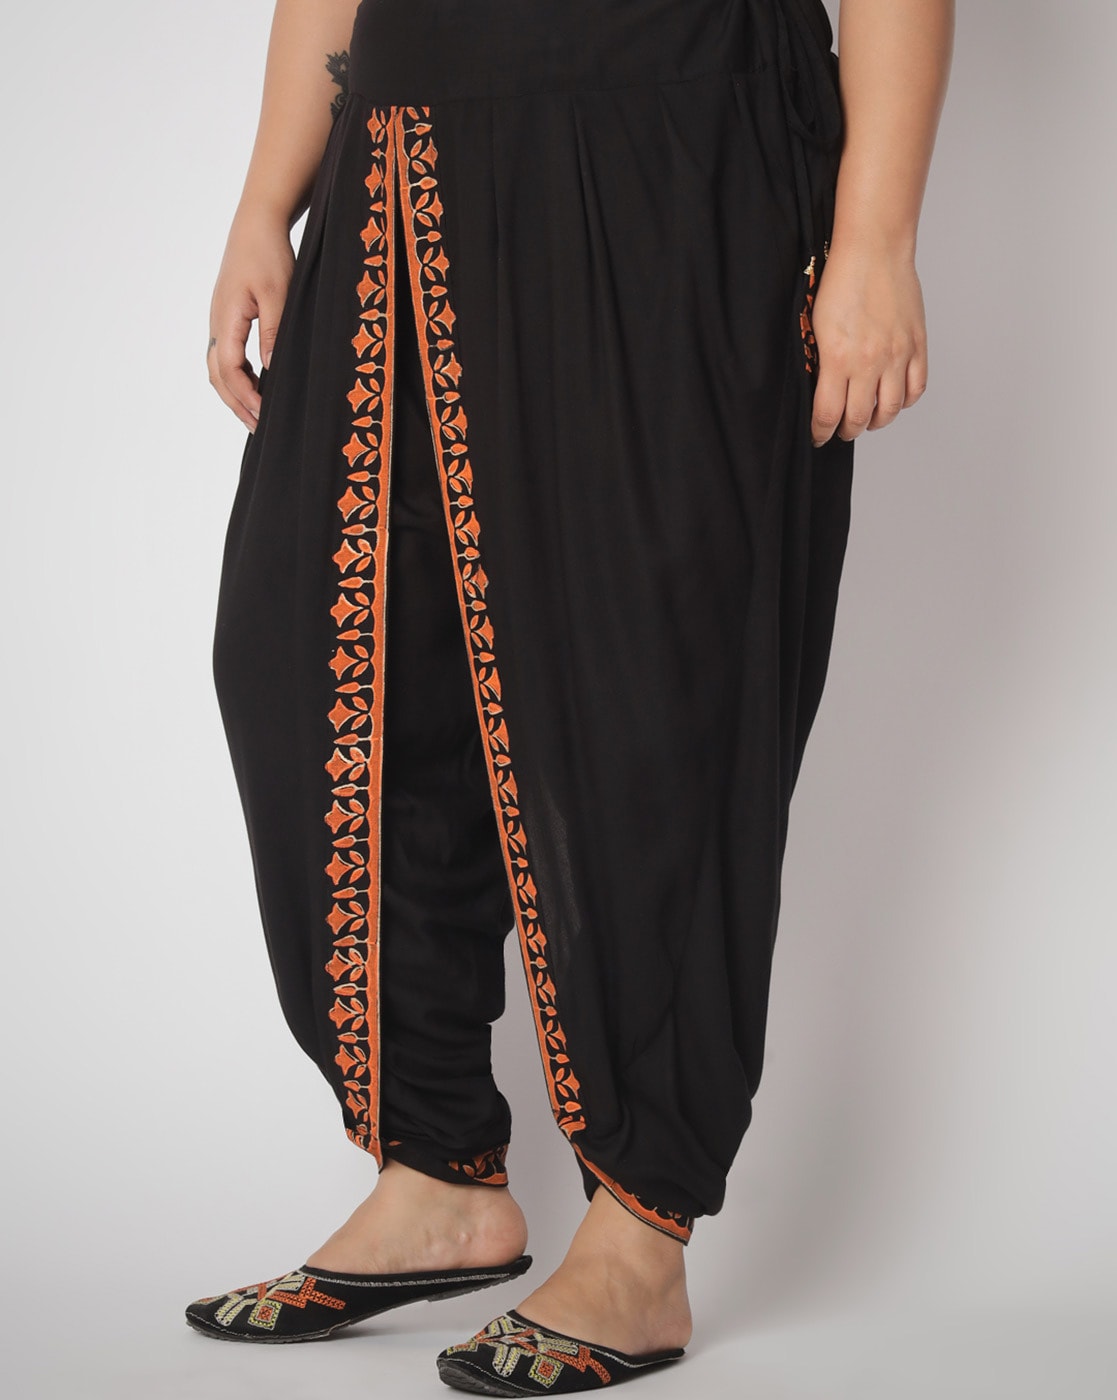 Stylish Dhoti Pants For Women... - TrendyFashions UAE | Facebook